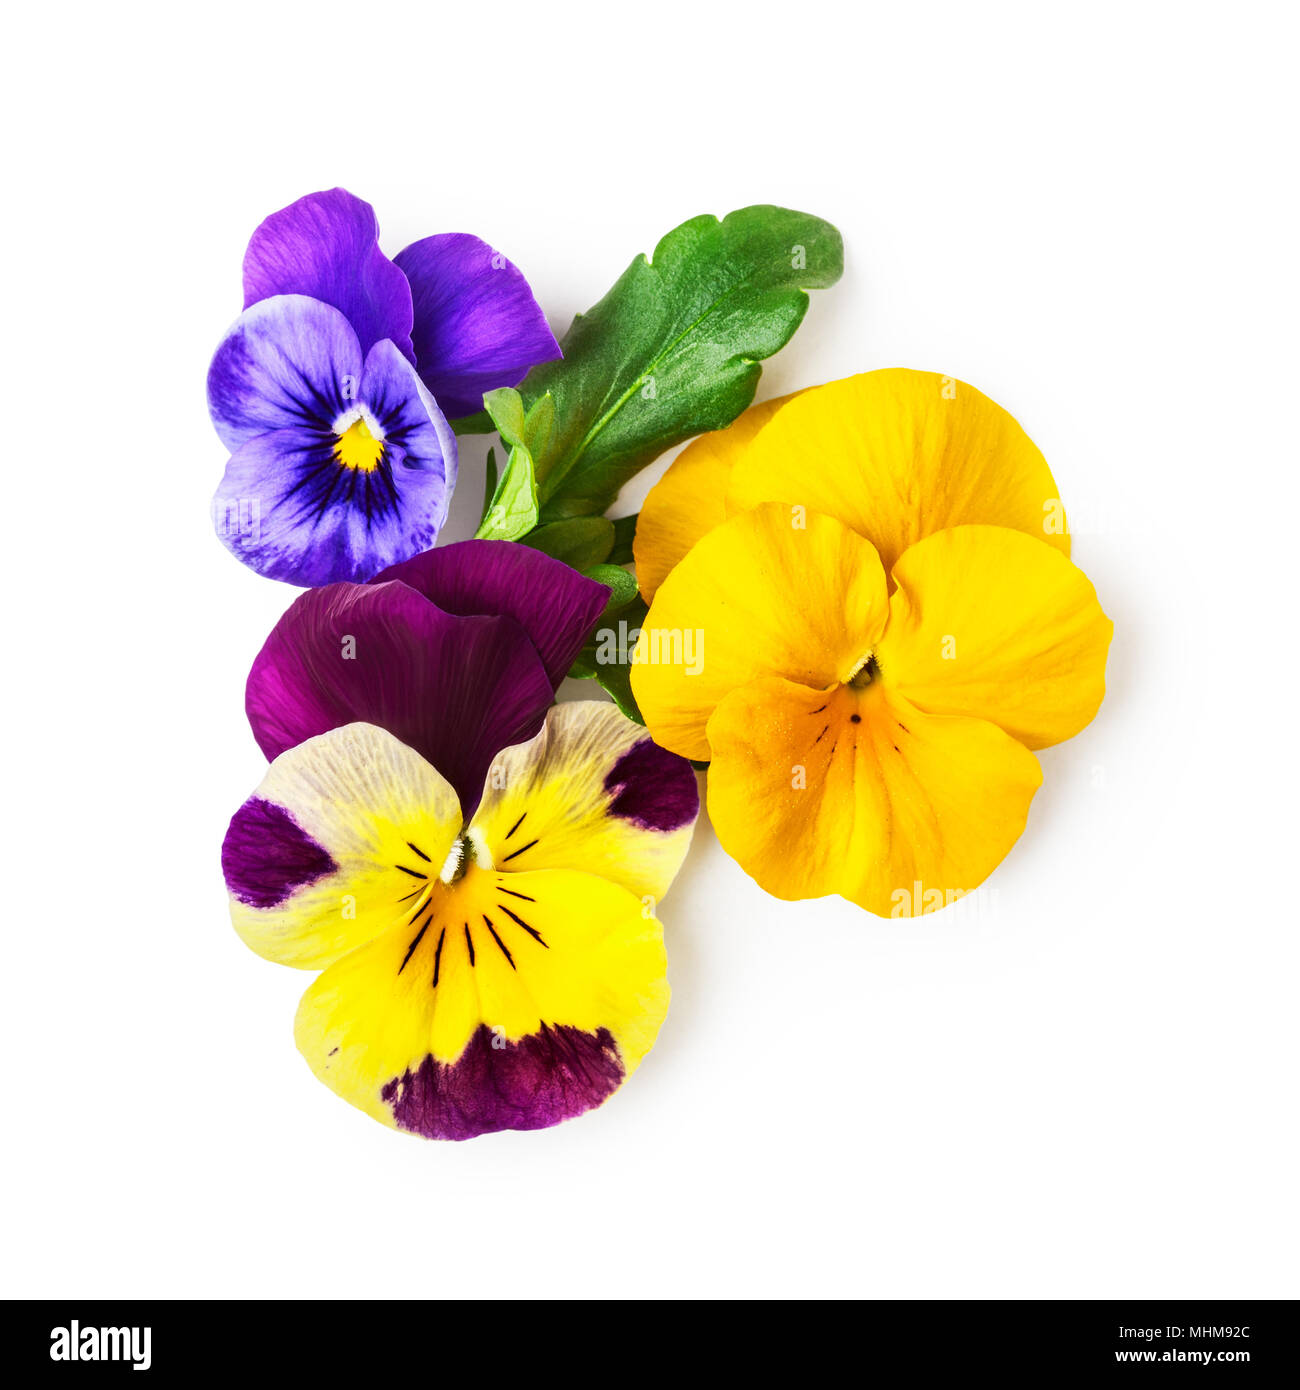 Stiefmütterchen Blumen oder spring garden Viola tricolor auf weißem Hintergrund Beschneidungspfad enthalten. Blumen und florales Design. Ansicht von oben, flach Stockfoto